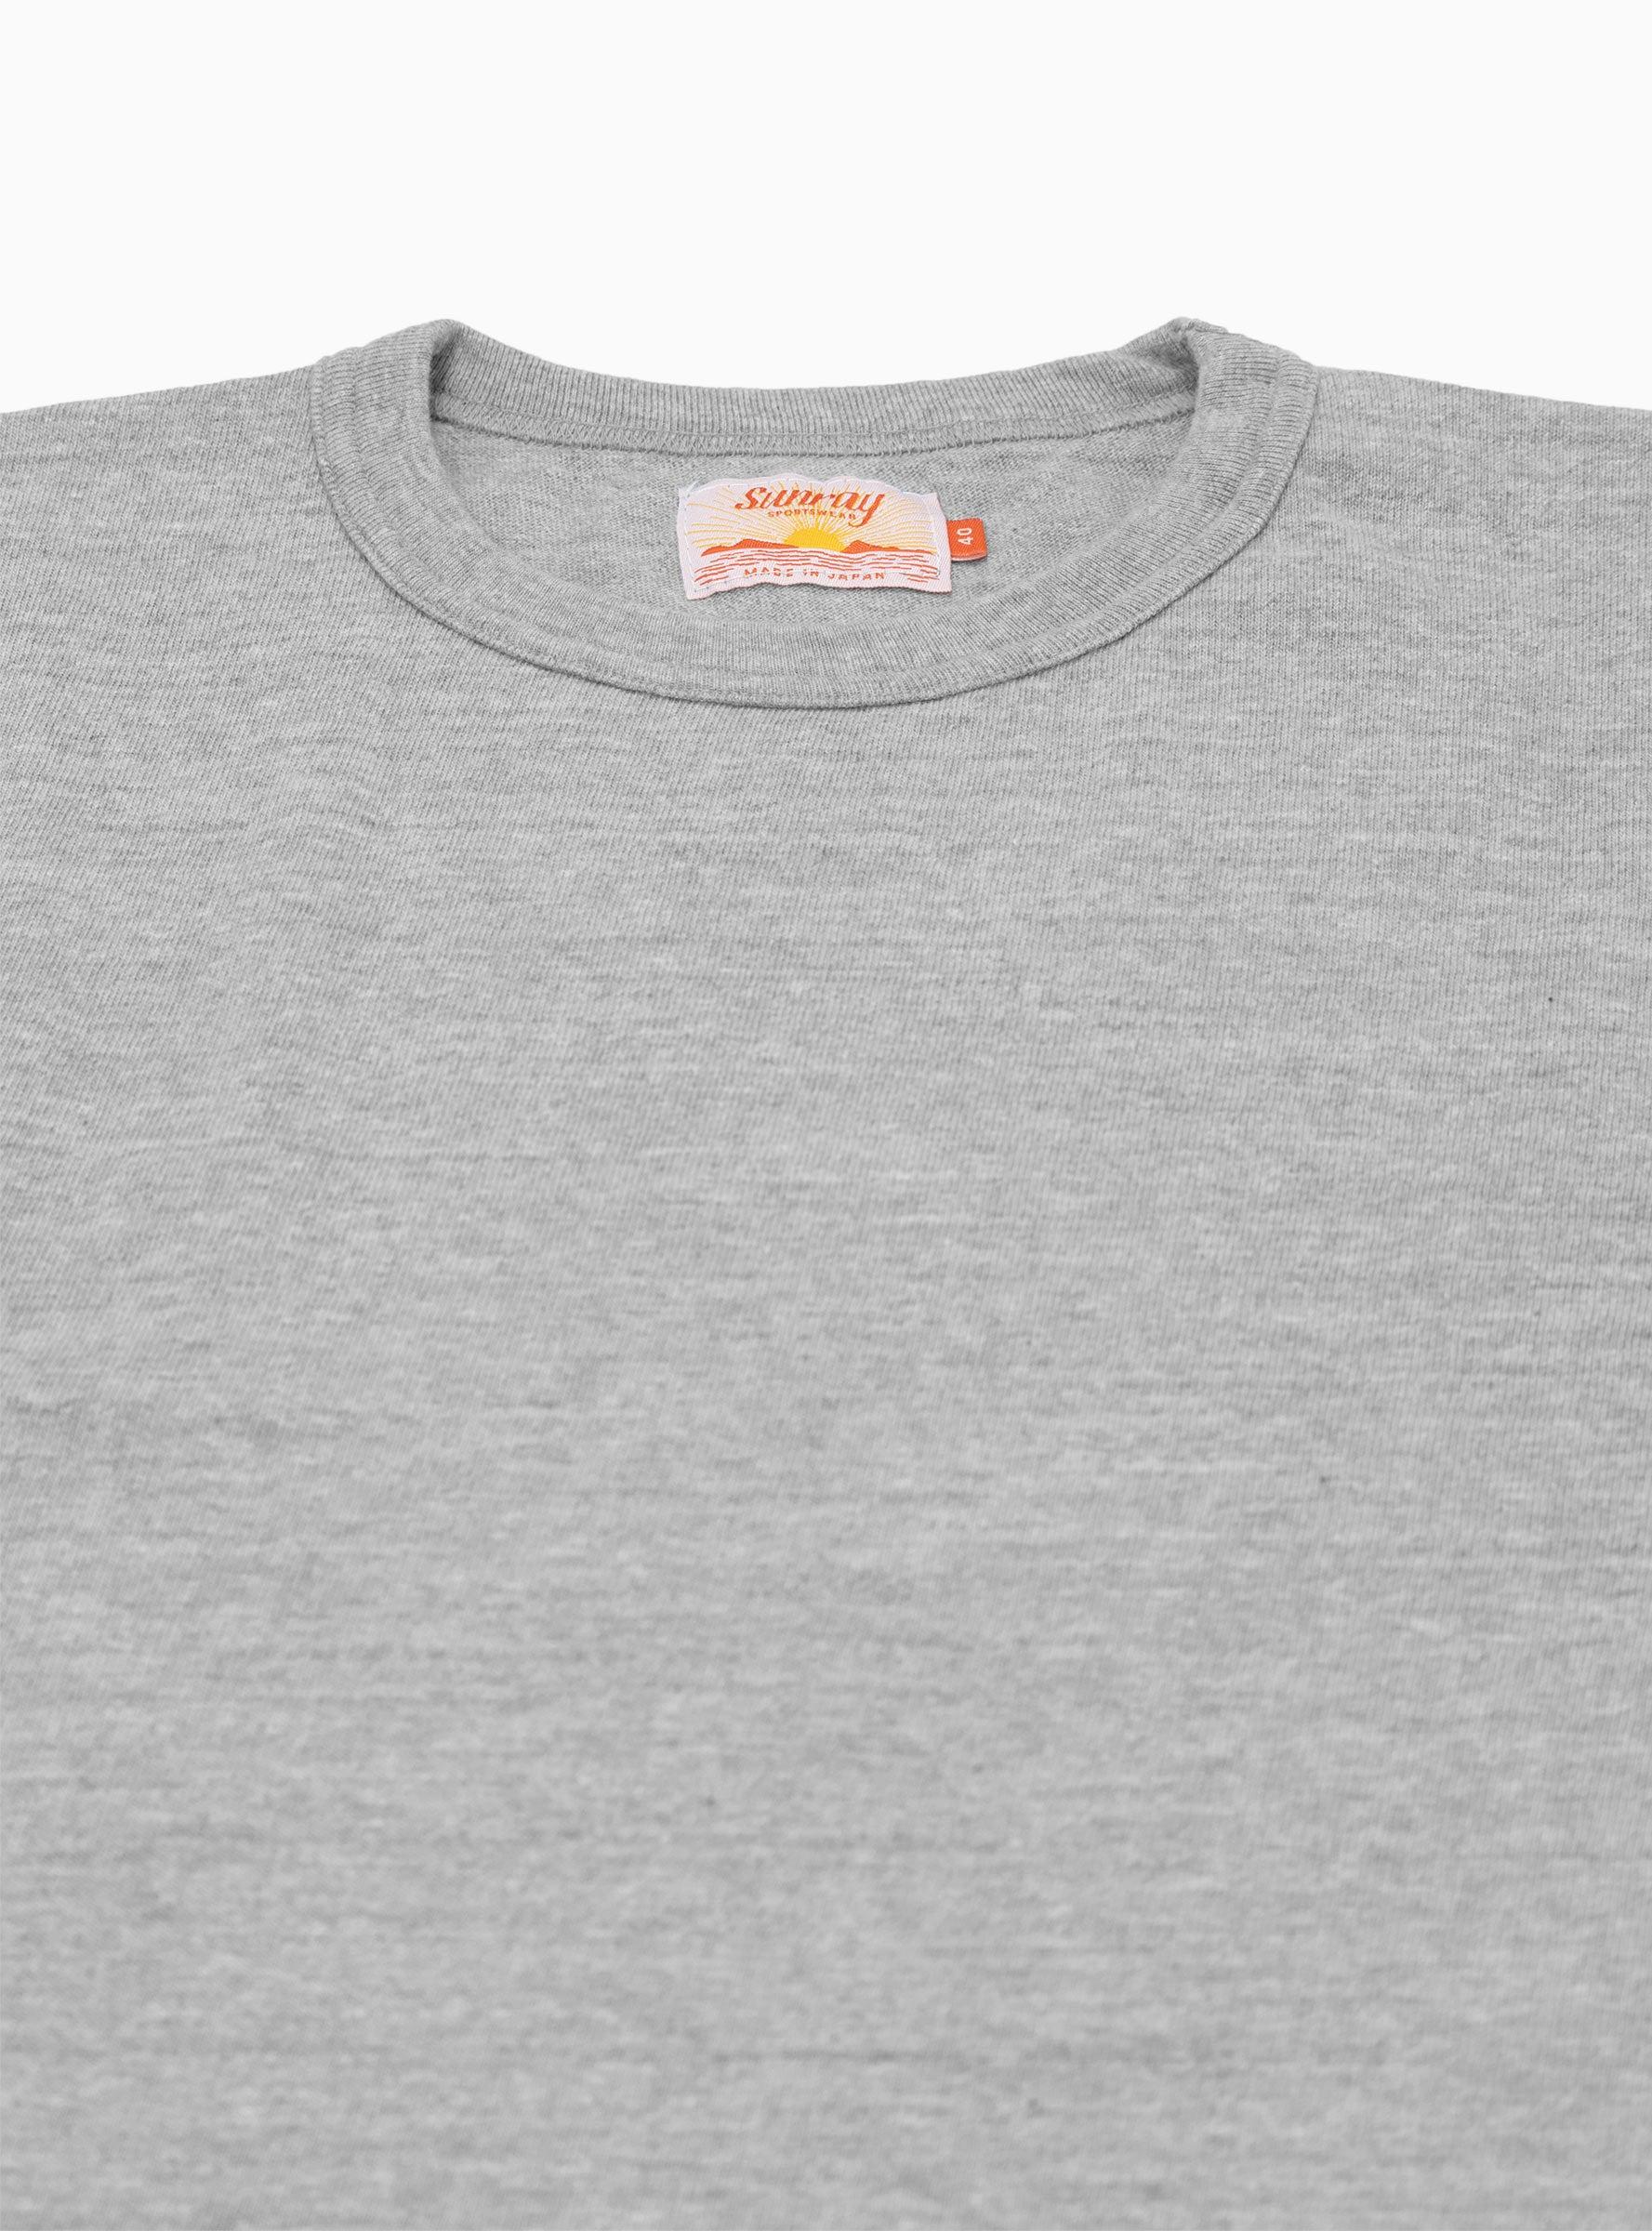 Men's Original Japan State T-shirt in Grey Marl